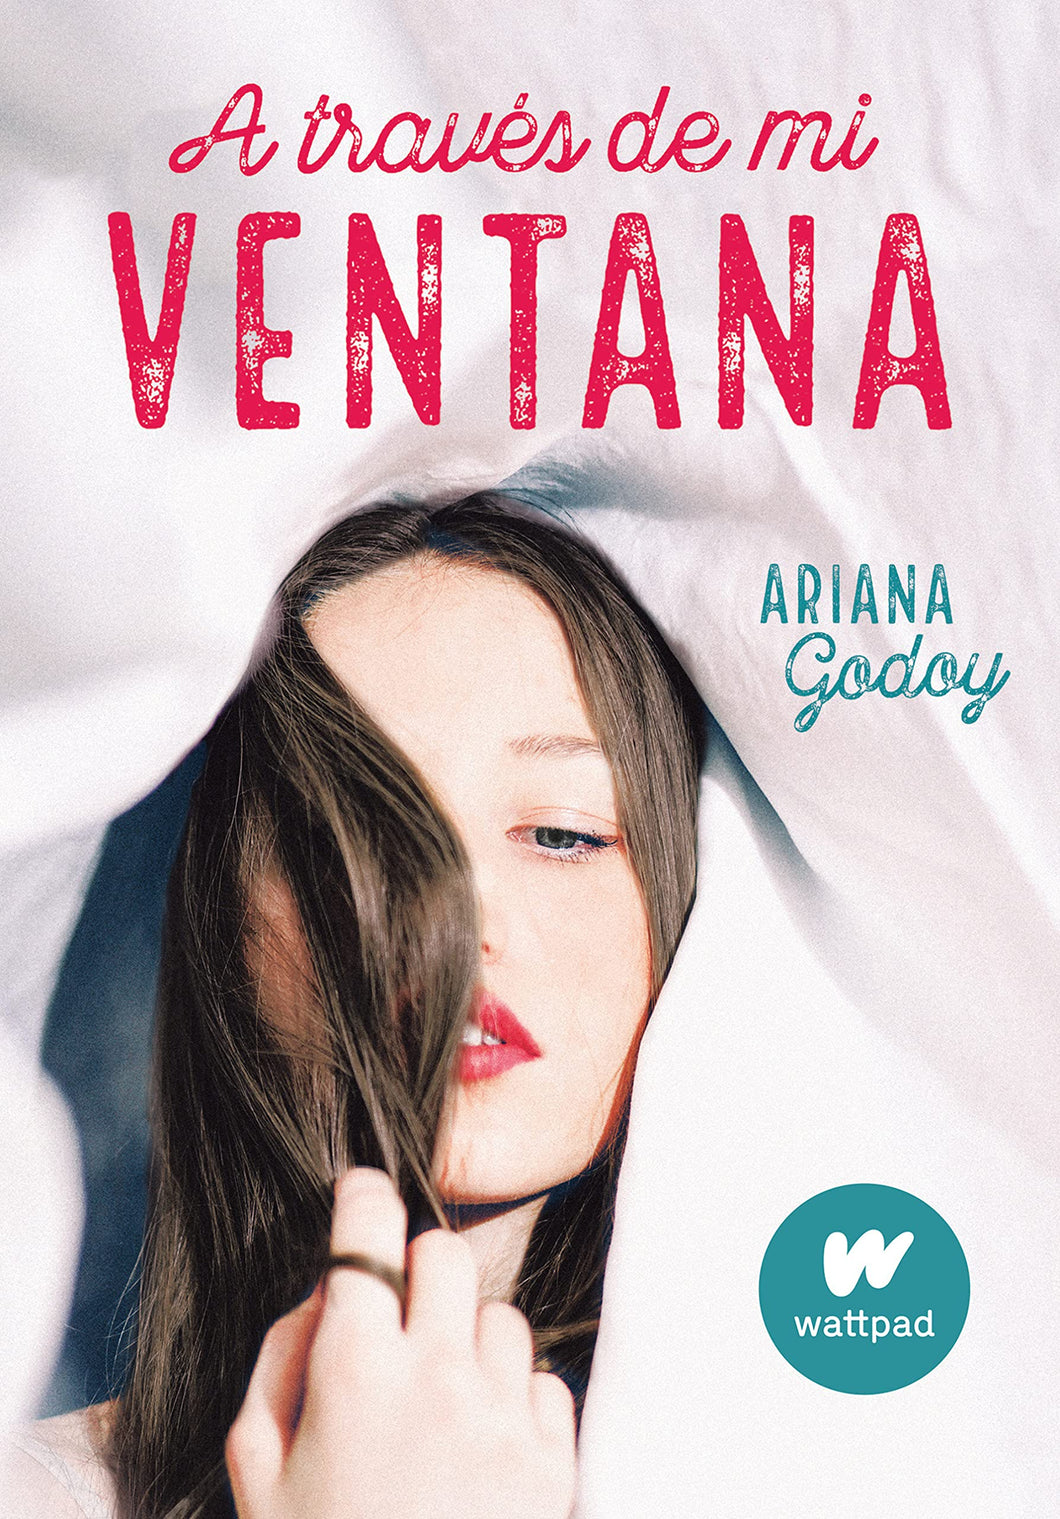 A TRAVÉS DE MI VENTANA - Ariana Godoy